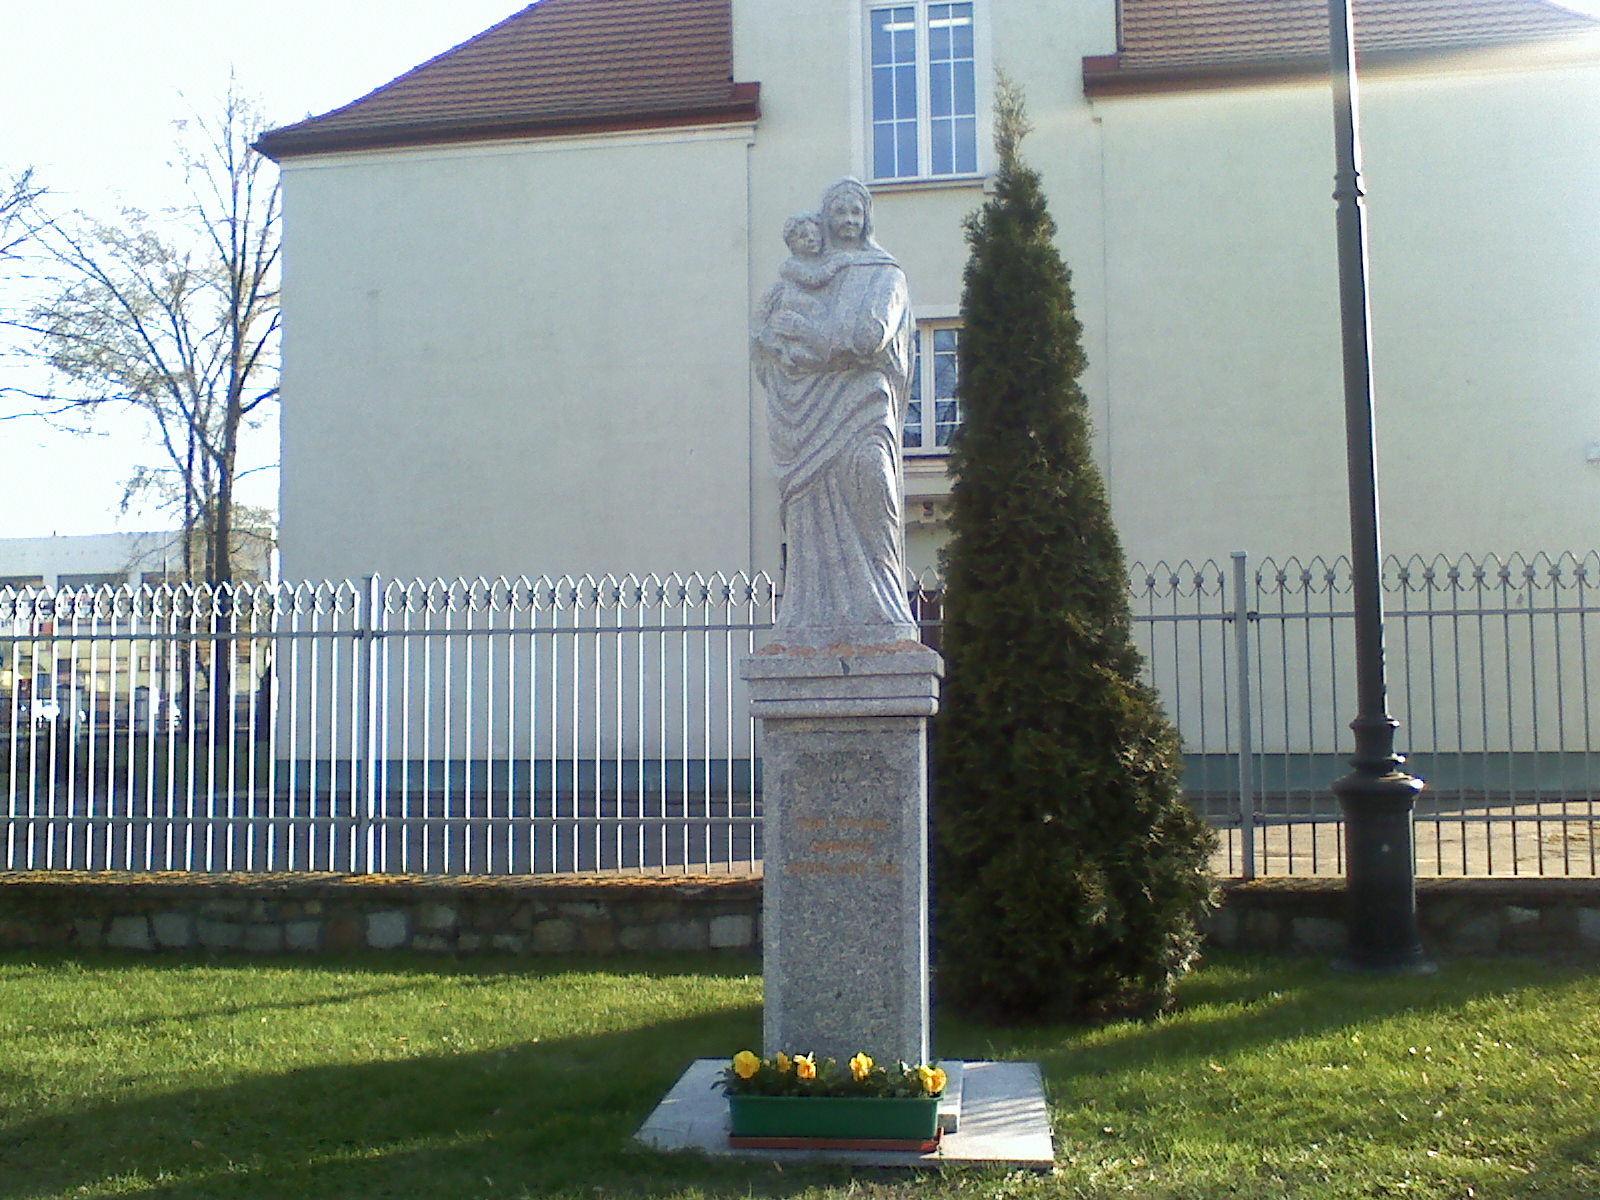 Figurka przy kościele poewangelickim w Sierpcu, kwiecień 2010 r.